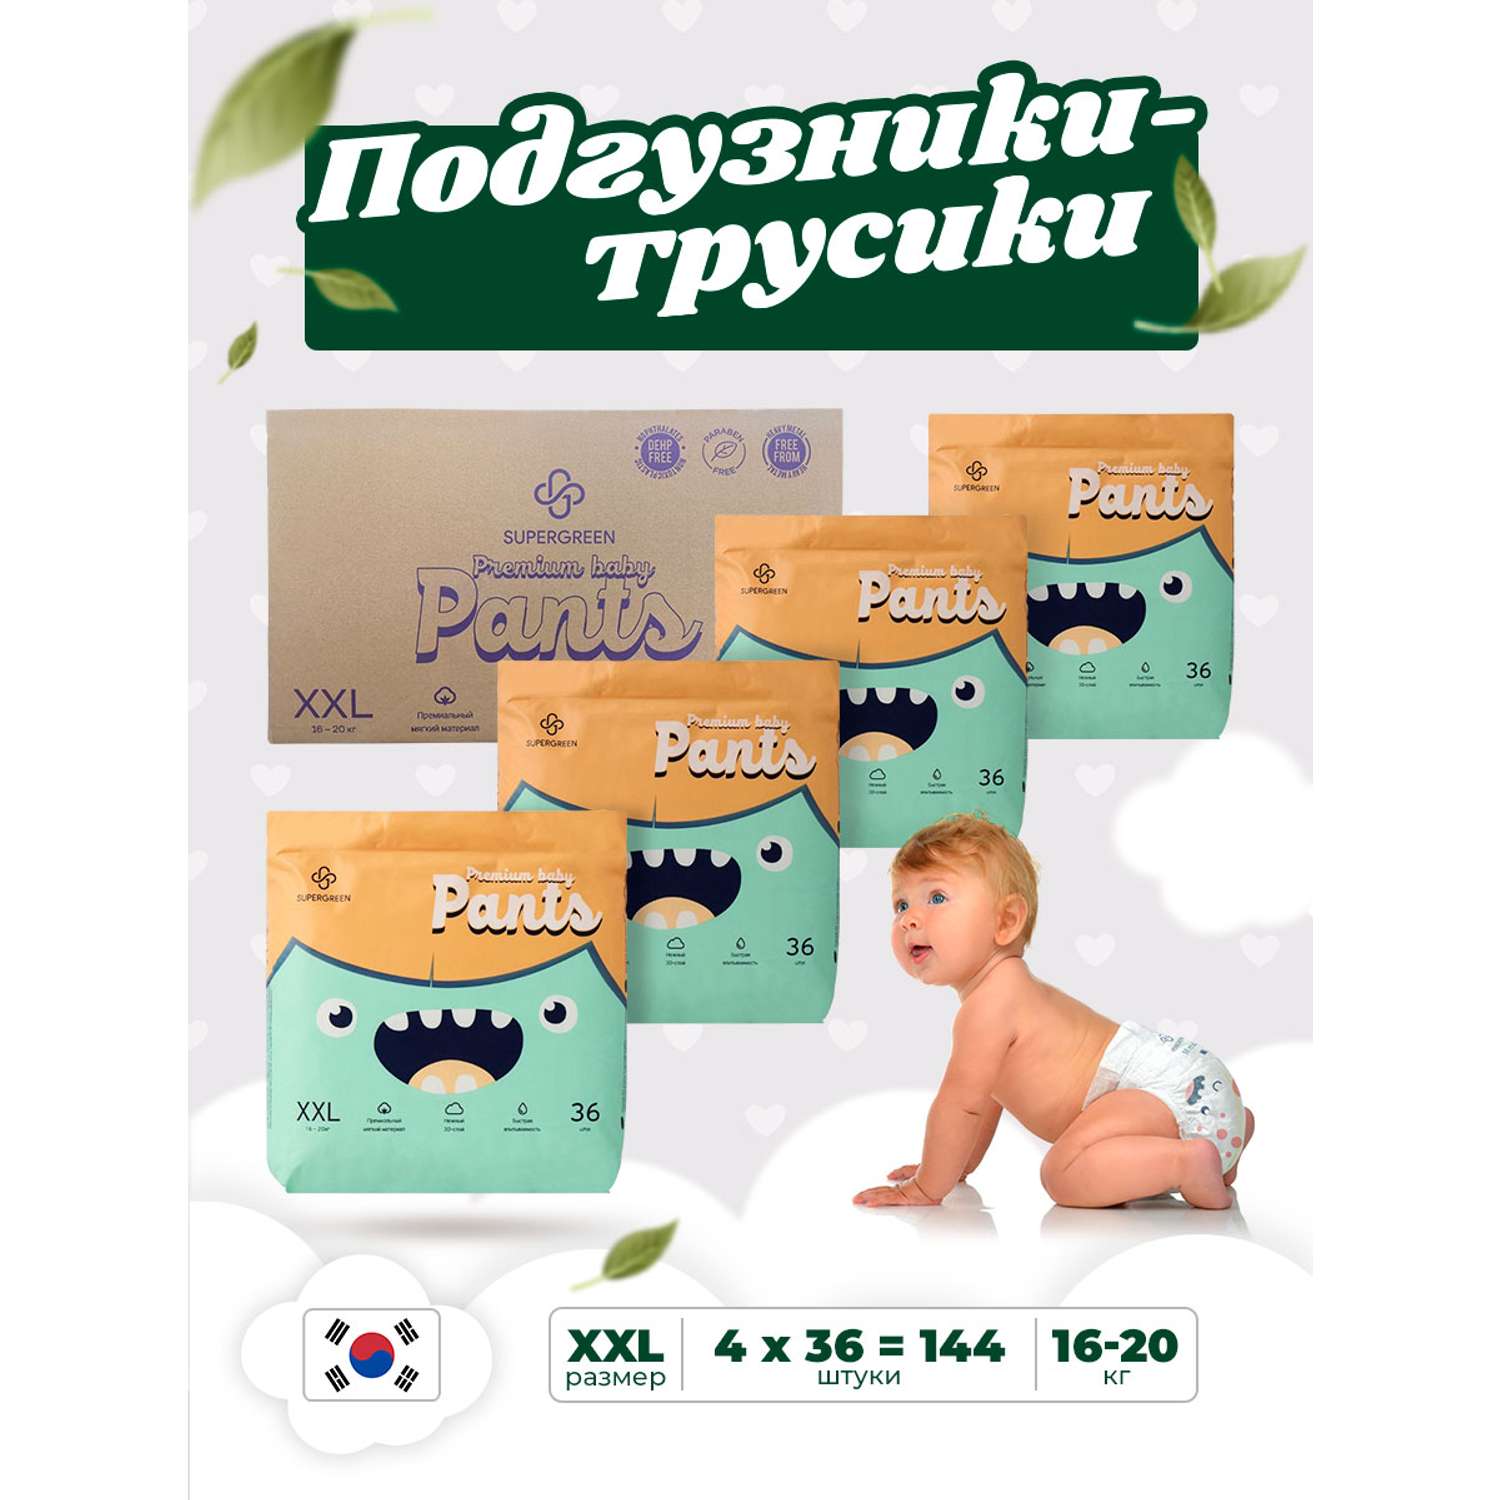 Трусики-подгузники SUPERGREEN Premium baby Pants ХХL размер 4 упаковки по 36 шт 16 -20 кг ультрамягкие - фото 1